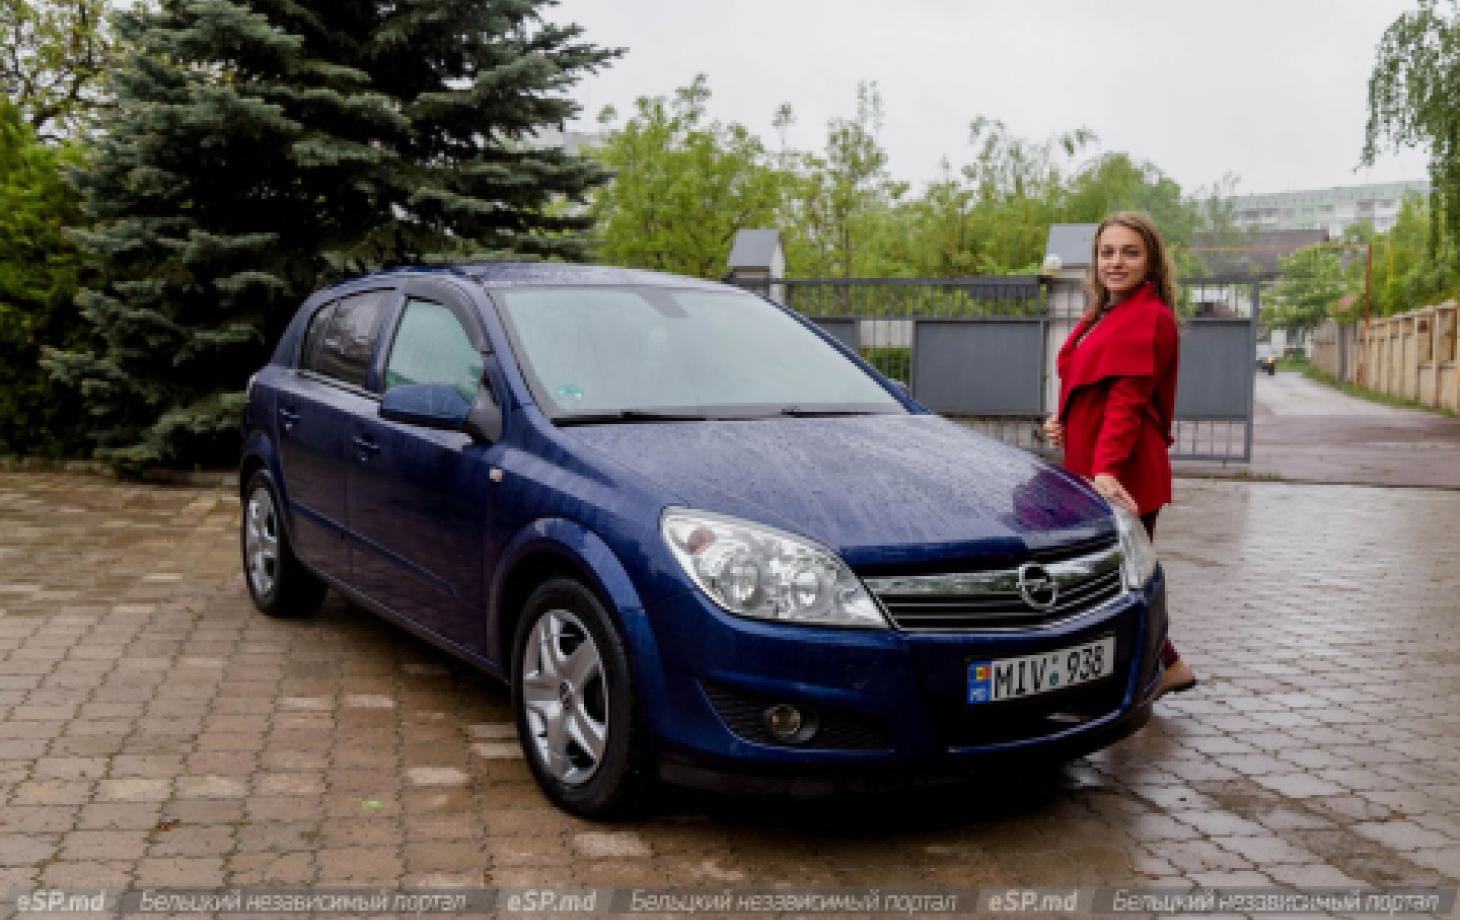 Бельчанка — владелица Opel Astra: «Машина для меня как мини-гардероб» | СП  - Новости Бельцы Молдова